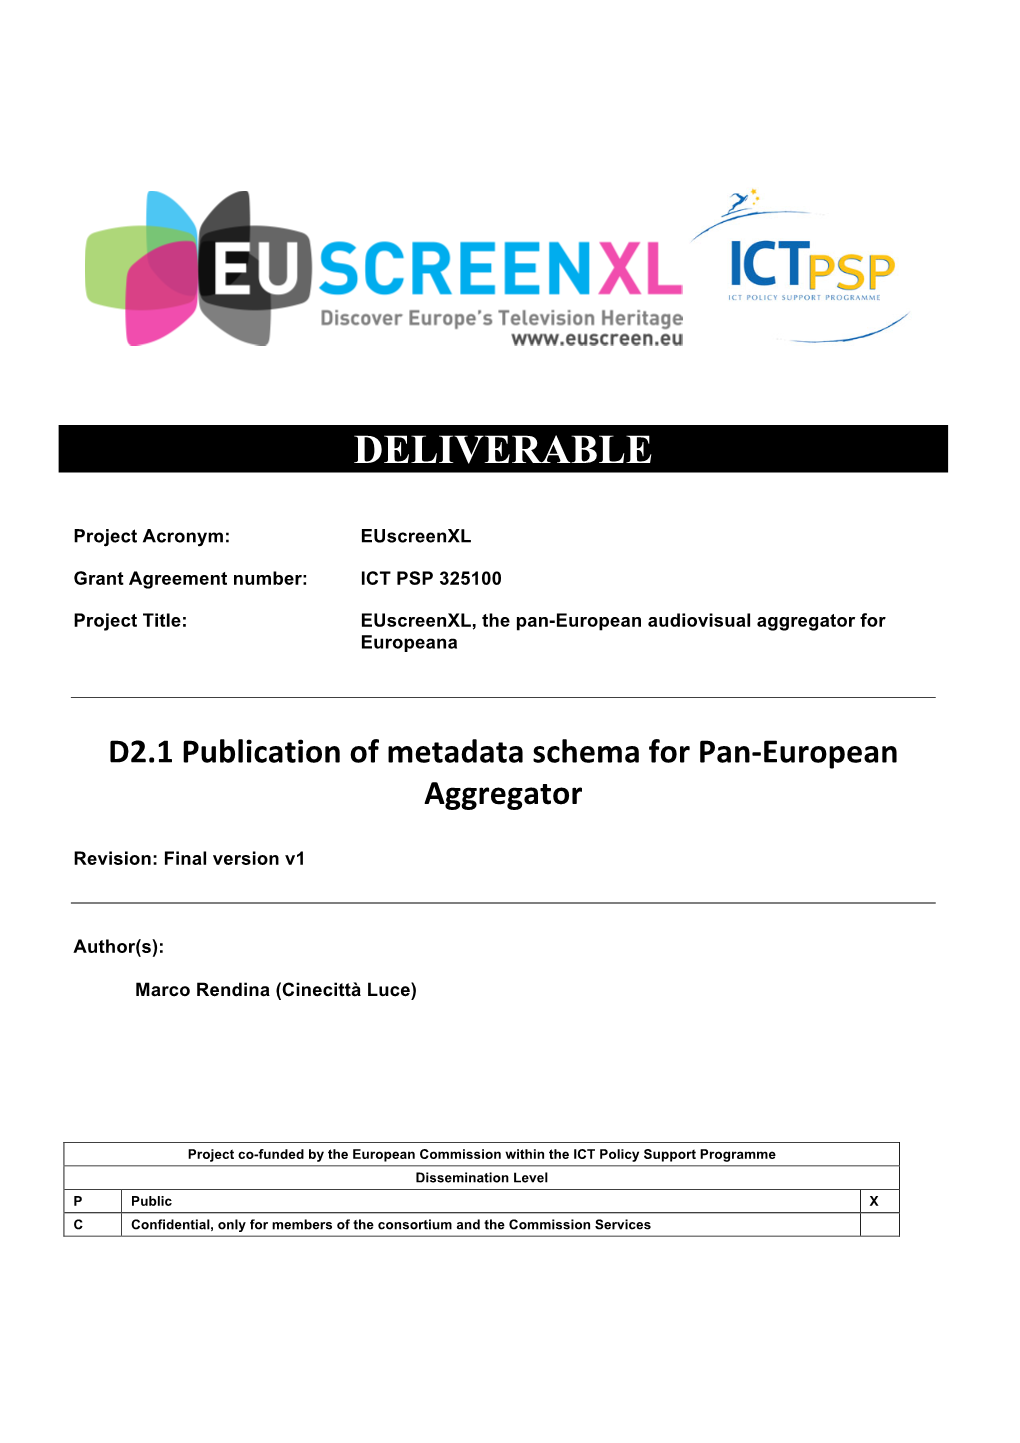 D2.1 Publication of Metadata Schema for Pan-European Aggregator